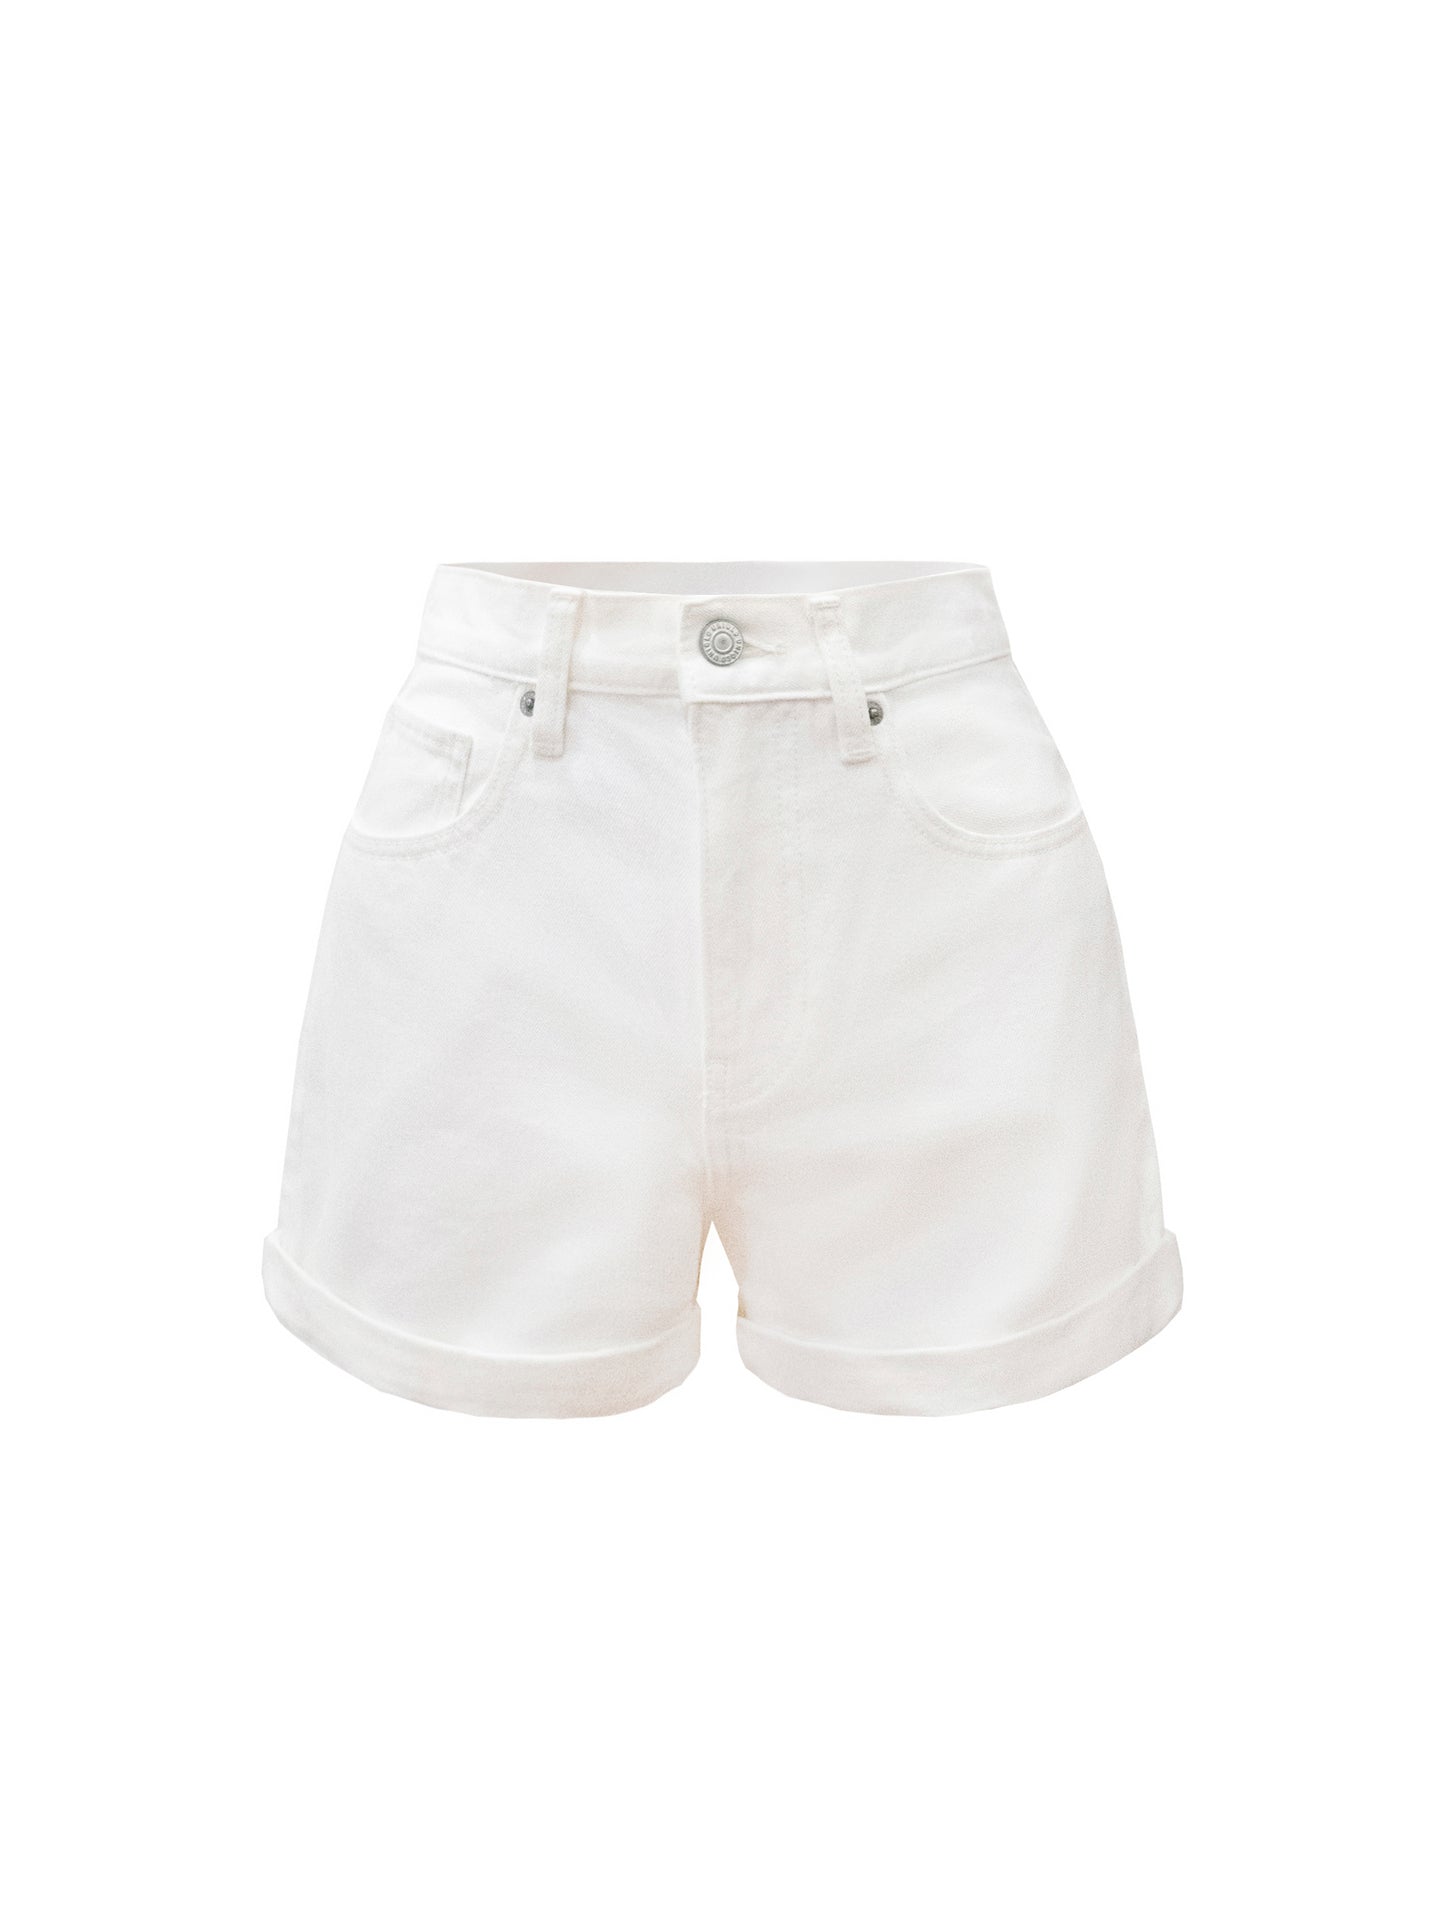 Ashley shorts - White